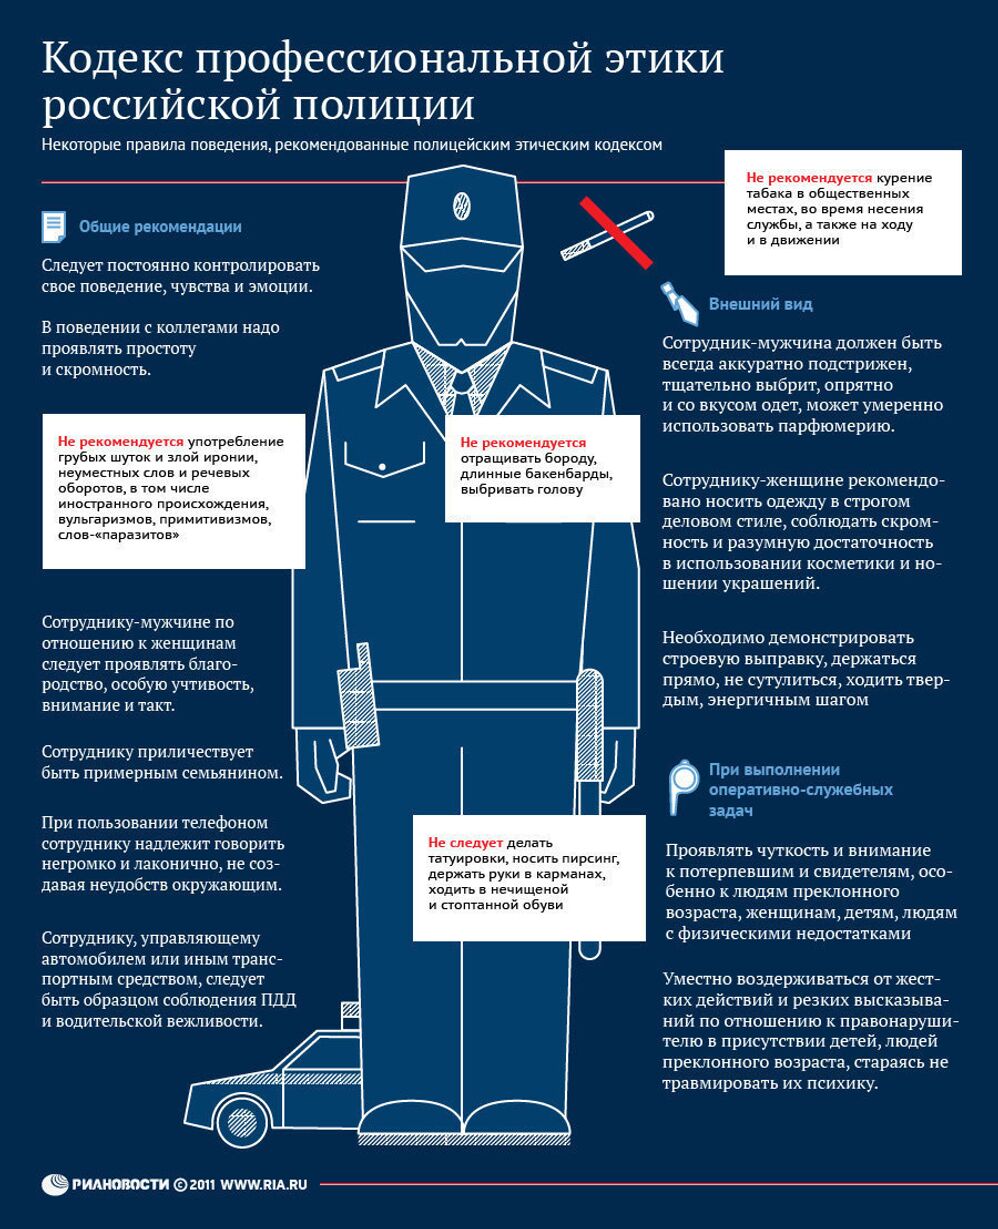 Кодекс этики для полицейских России